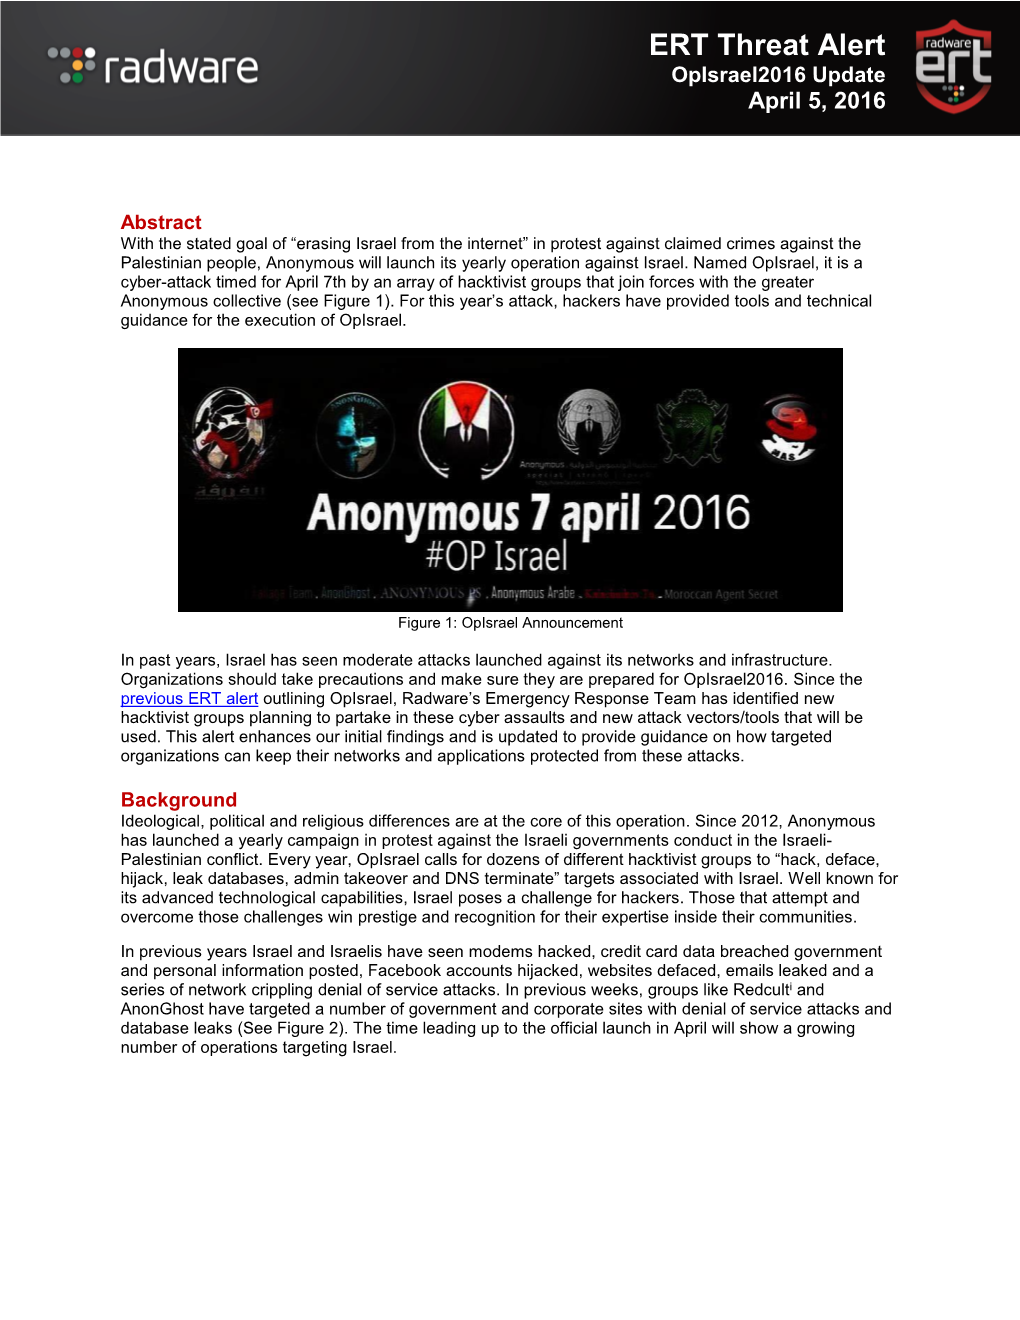 ERT Threat Alert Opisrael2016 Update April 5, 2016